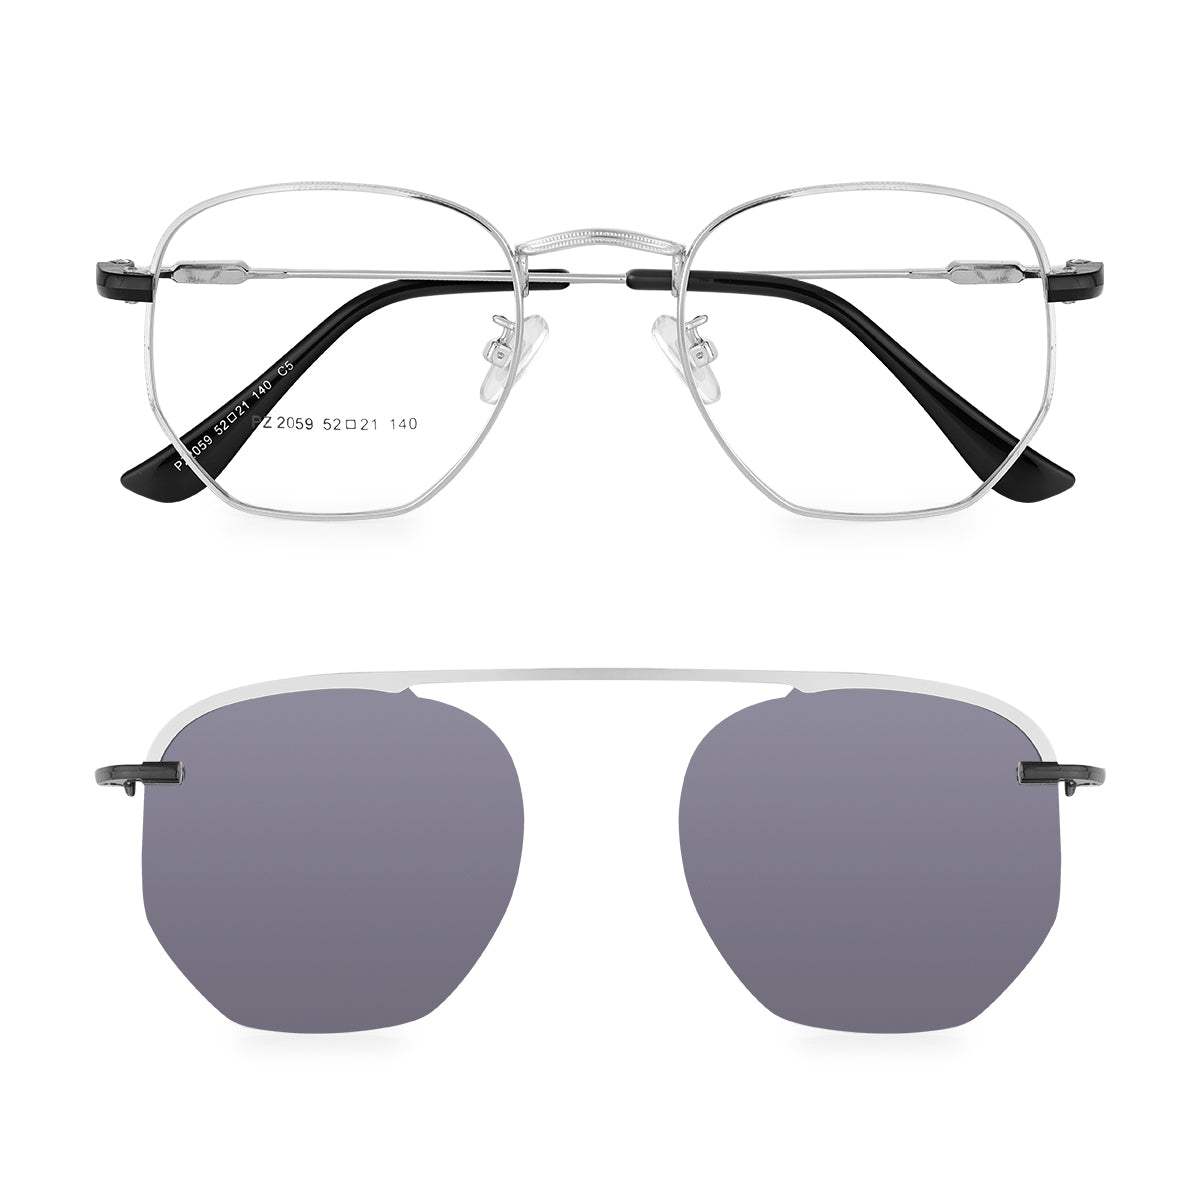 Óculos de Grau Kessy 353